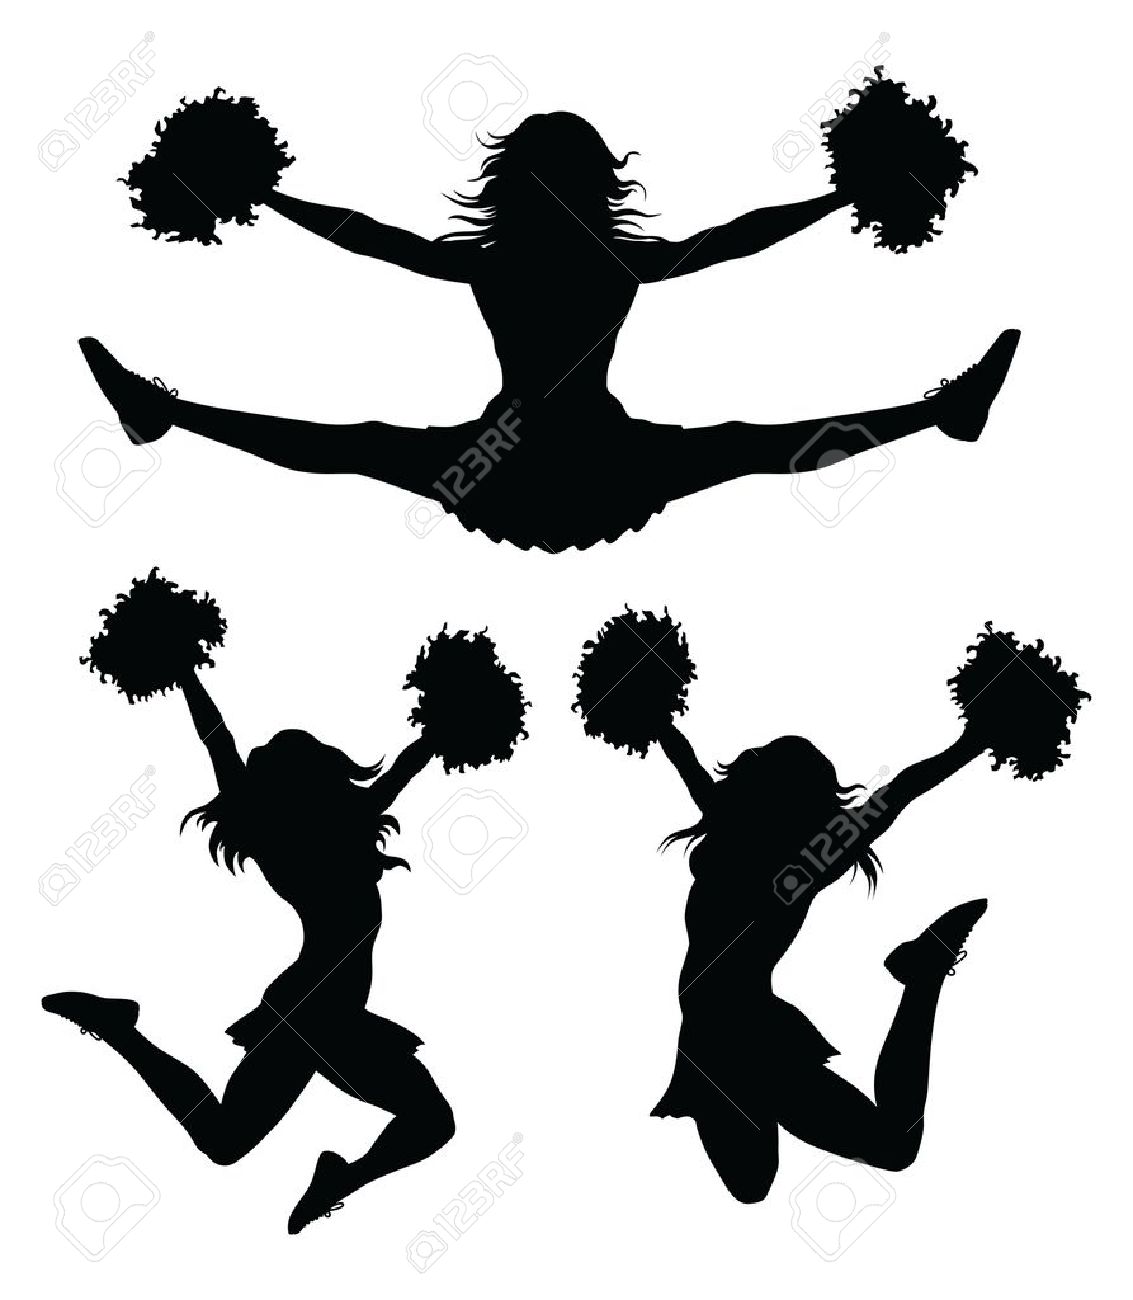 Cheer Jumps Silhouette Clipar - Cheerleading Silhouette Clip Art